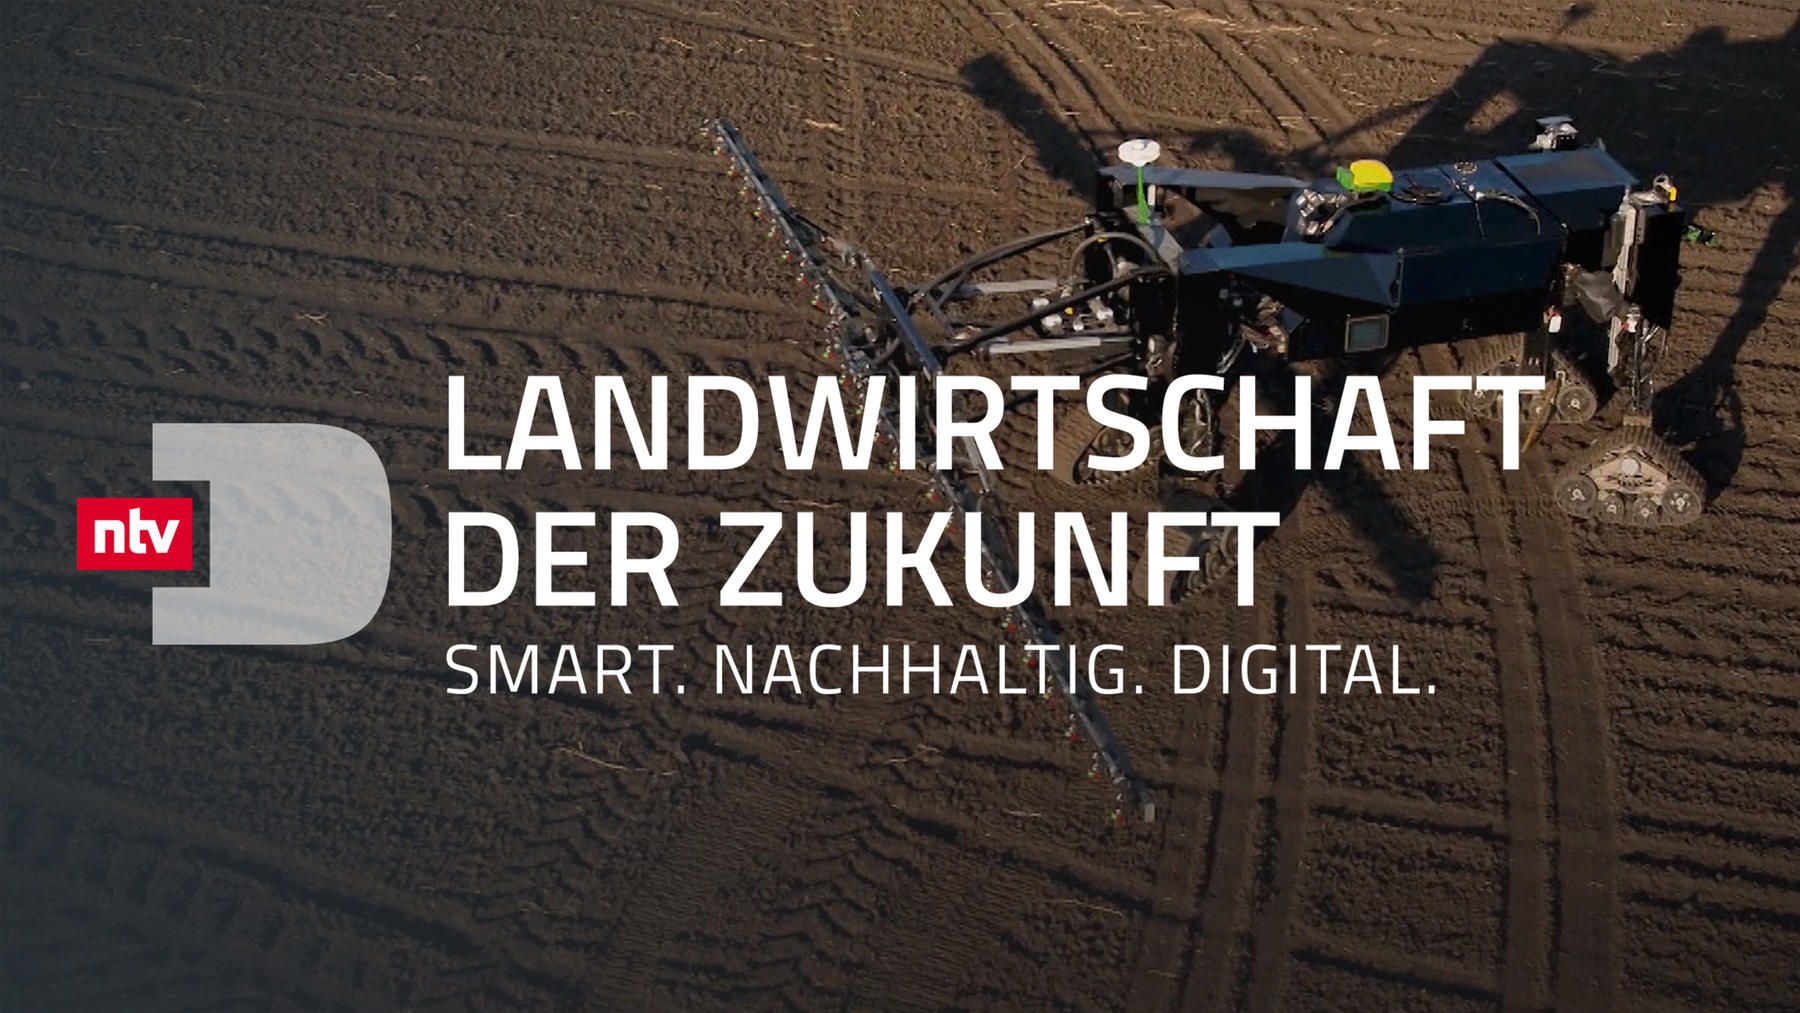 Landwirtschaft der Zukunft - Smart. Nachhaltig. Digital.